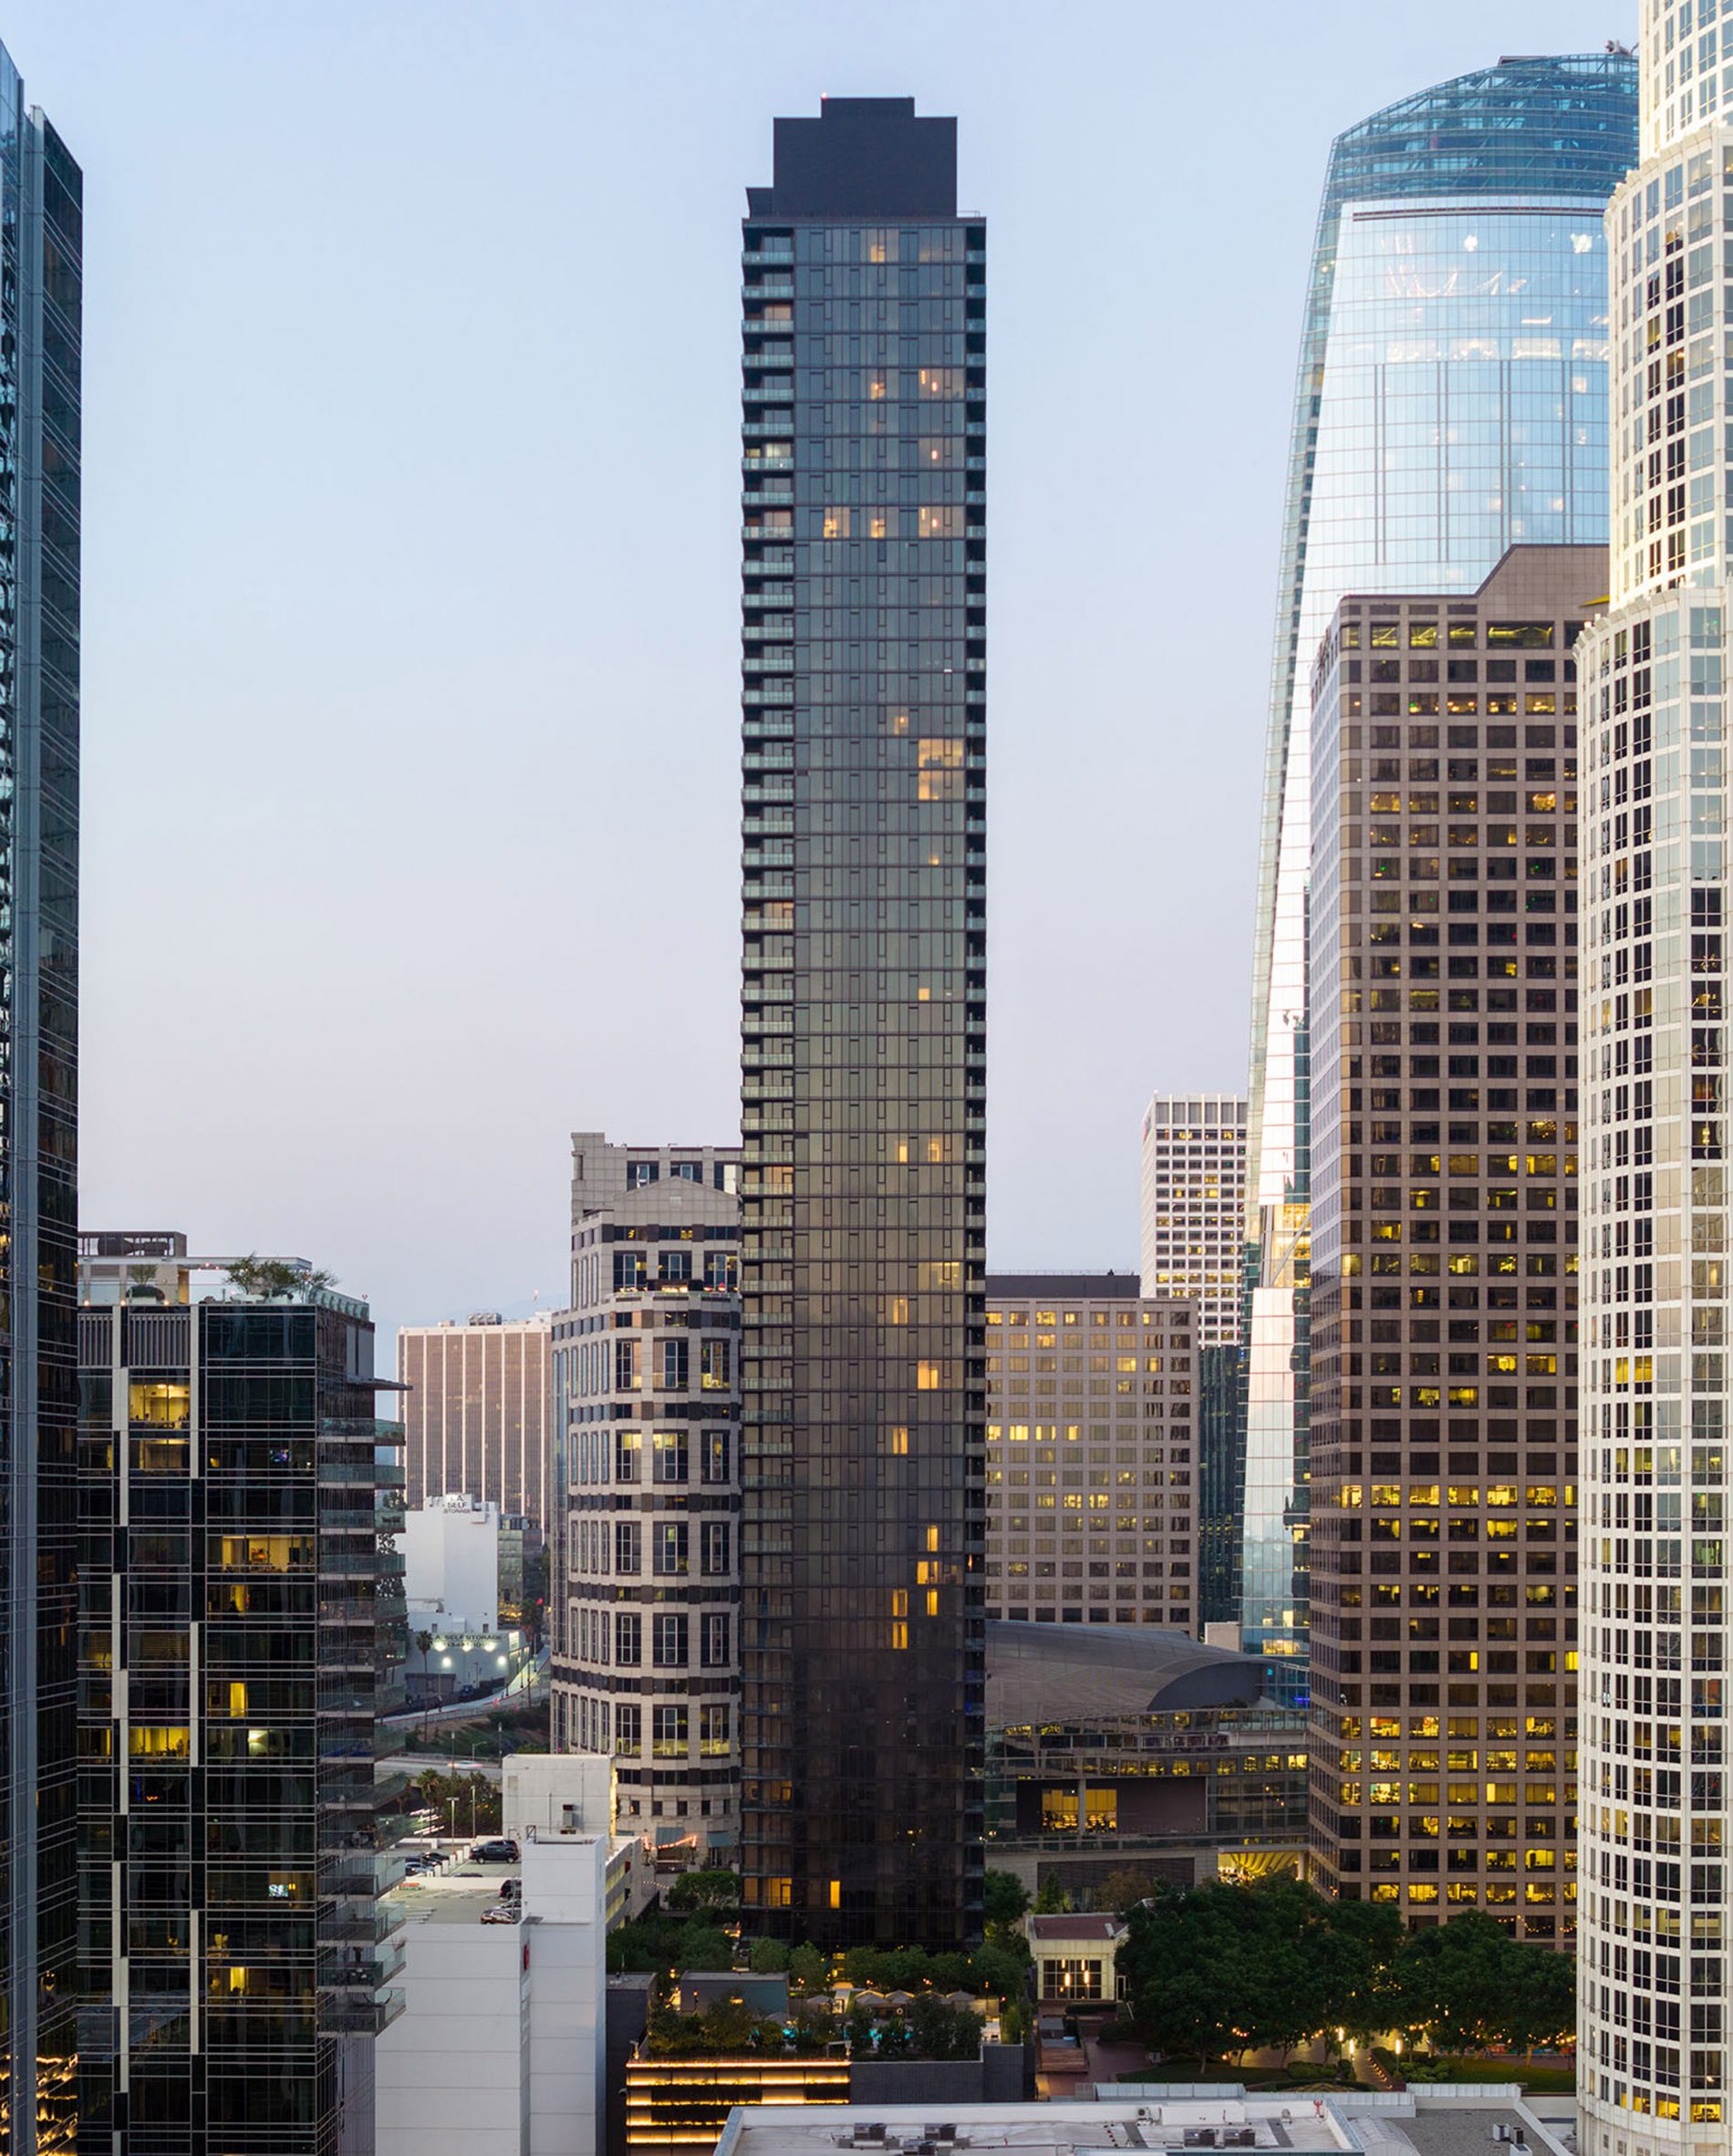 Los Angeles skyscraper 